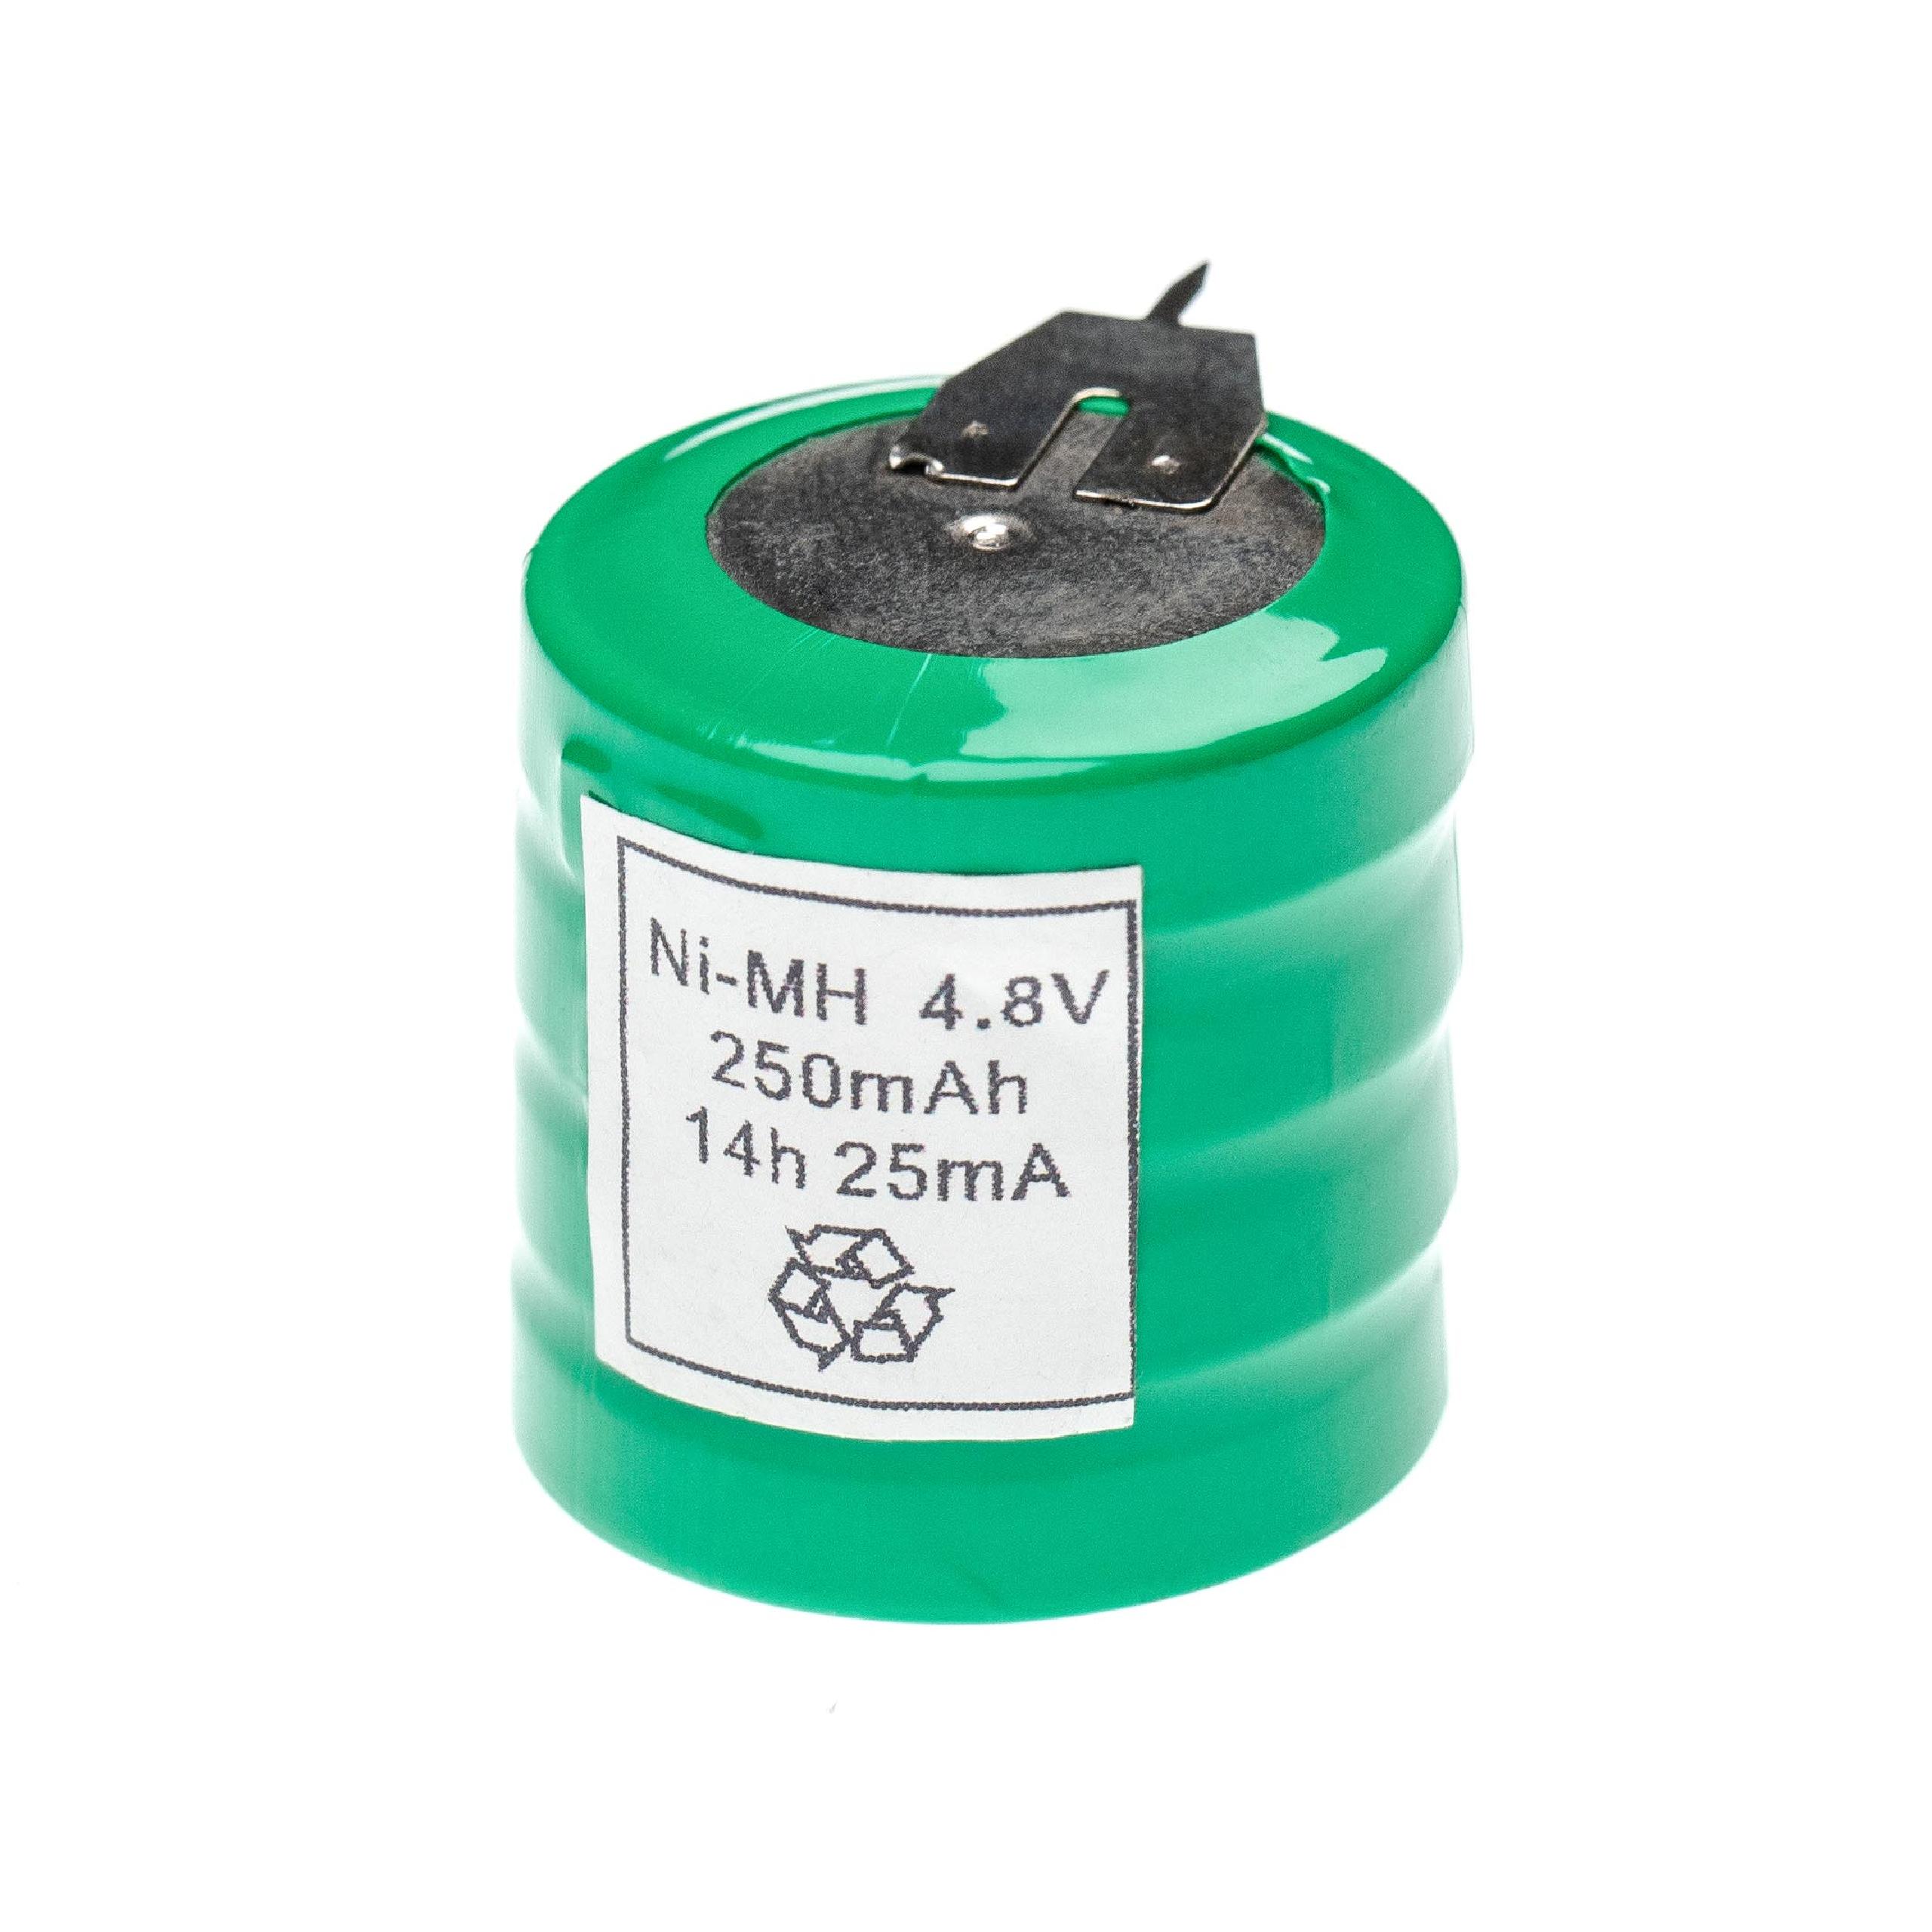 Akumulator guzikowy (4x ogniwo) typ V250H 3 pin do modeli, lamp solarnych itp. zam. V250H - 250 mAh 4,8 V NiMH